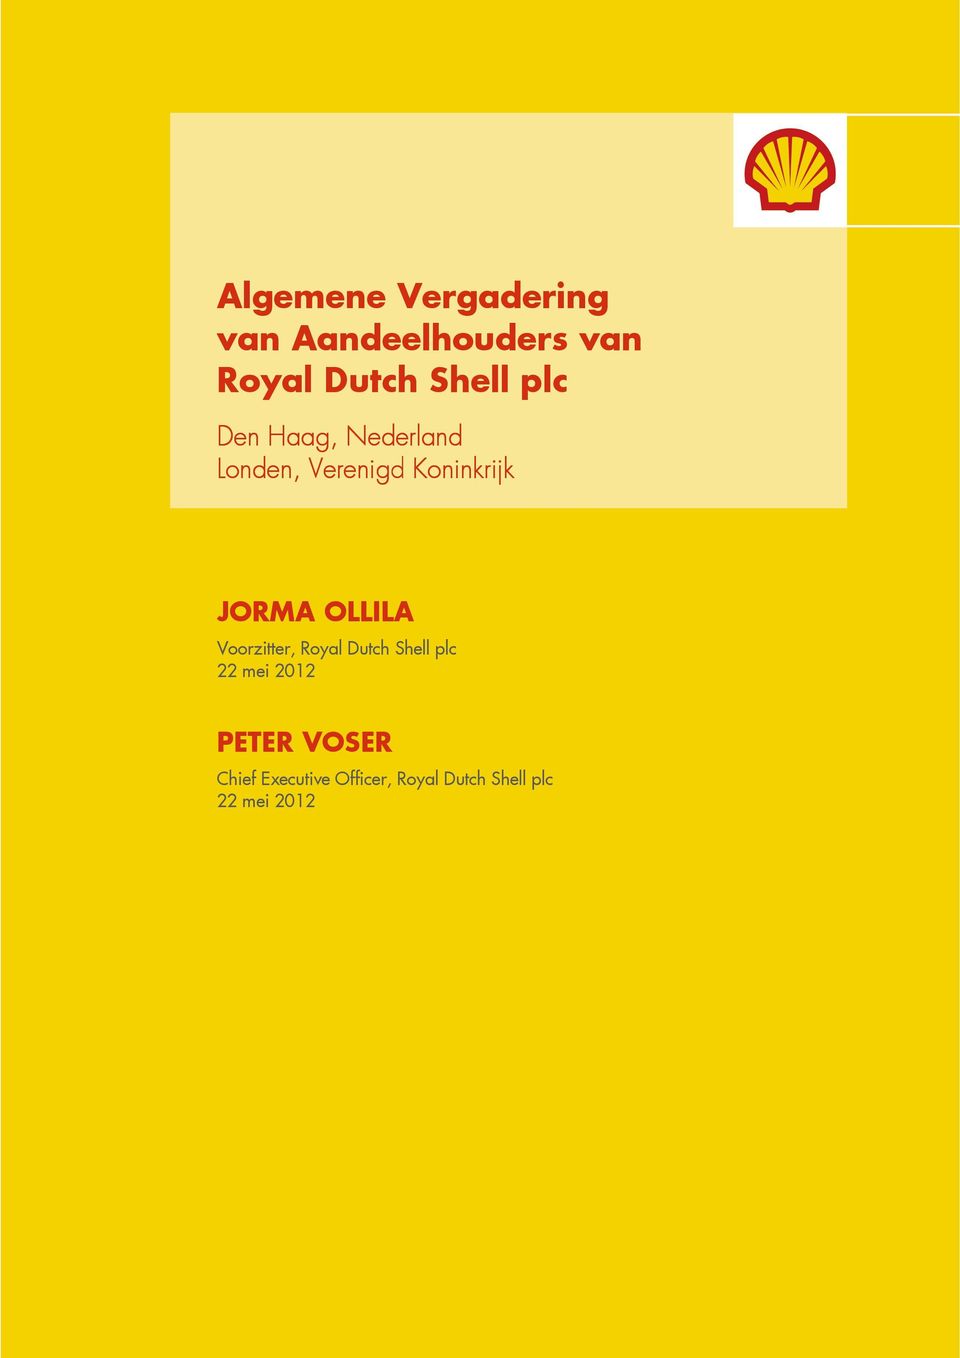 JORMA OLLILA Voorzitter, Royal Dutch Shell plc 22 mei 2012